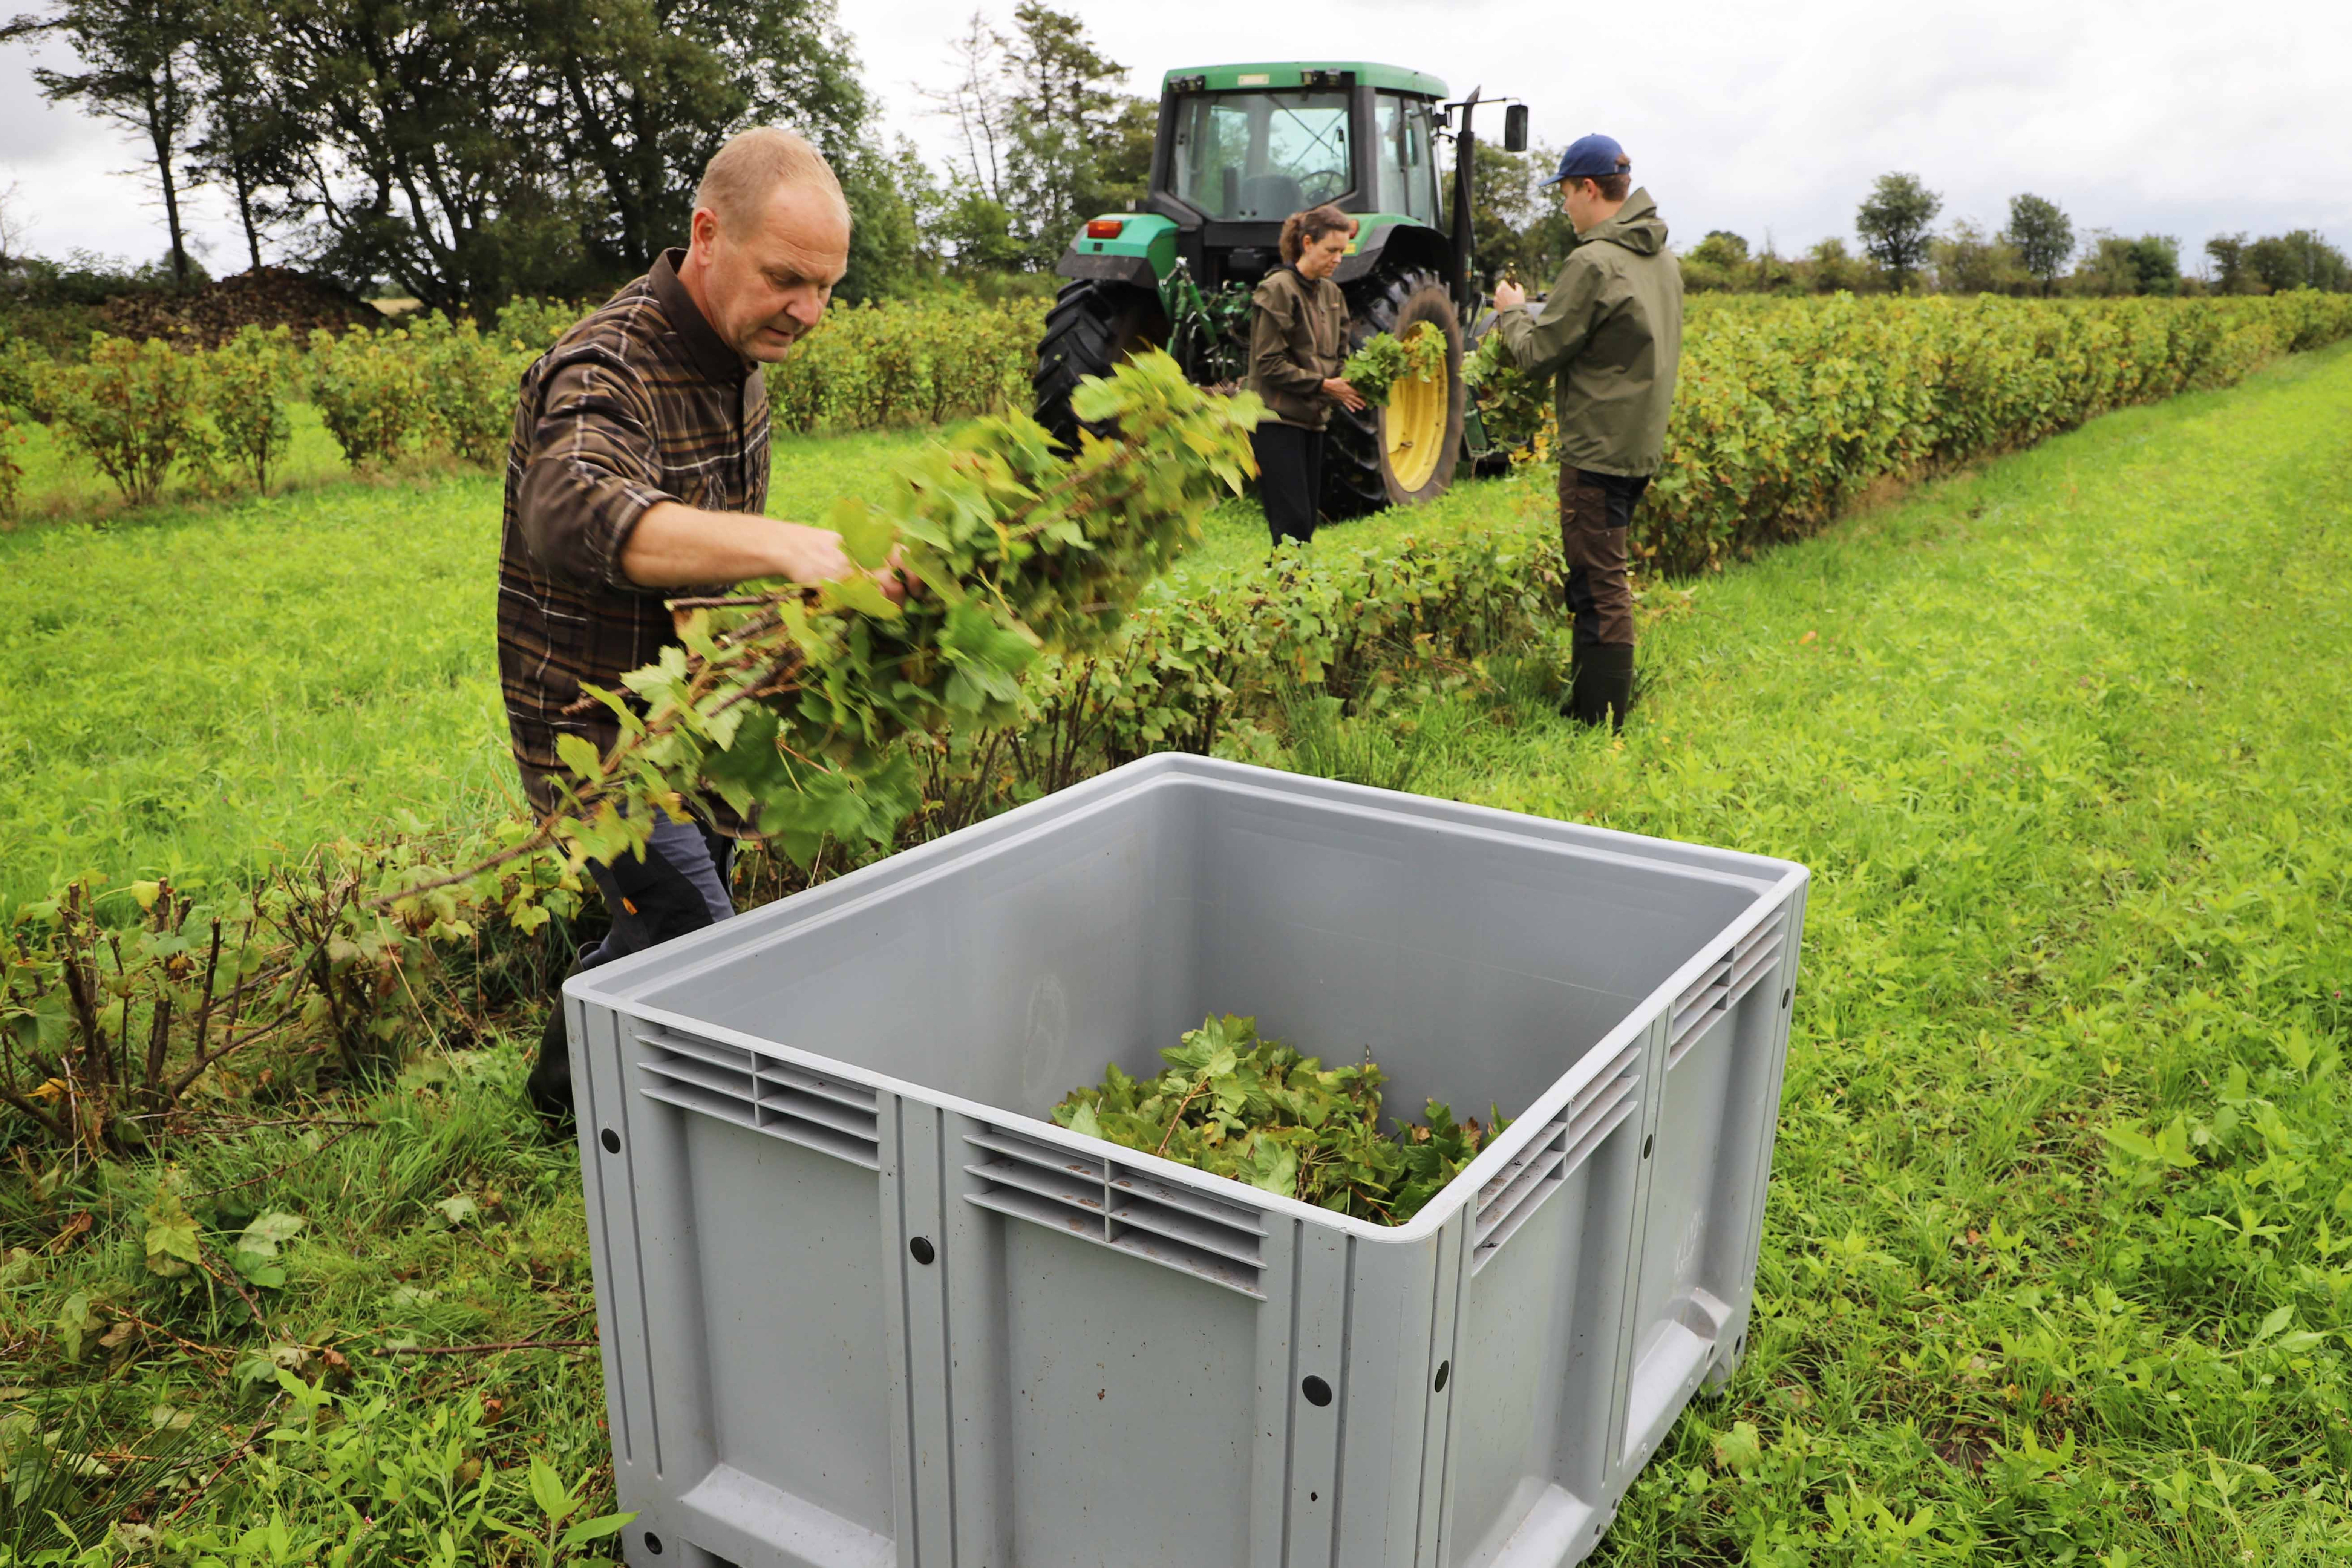 Finn, Helle og Søren Bilberg skærer grene og sorterer dem i deres lille familiedrevne firma Astrup Hede Økobær